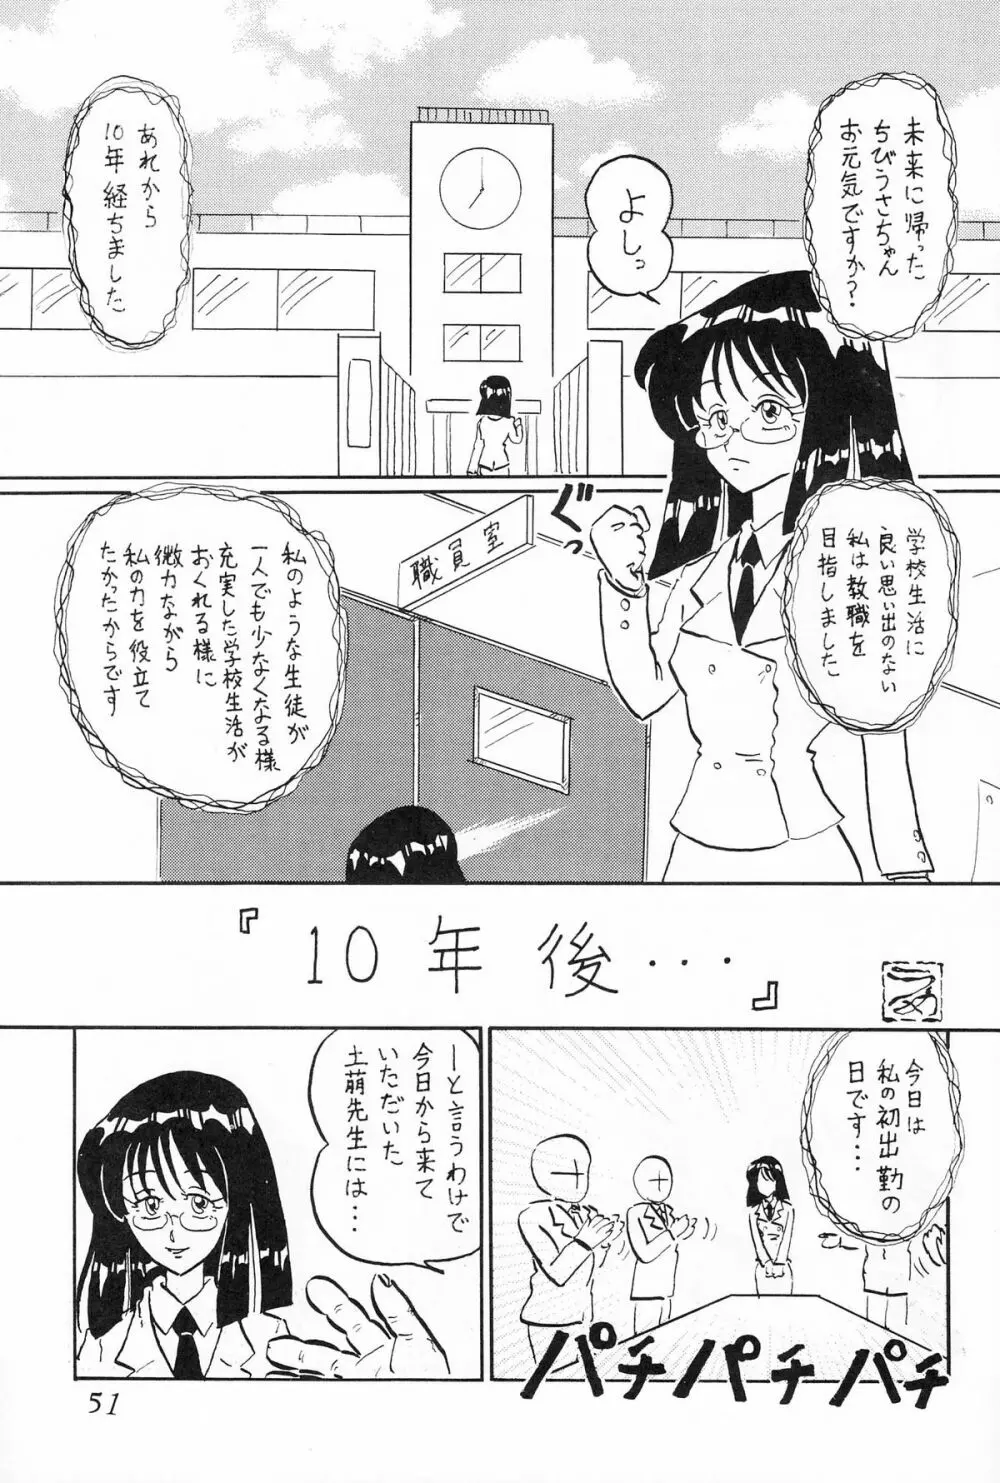 サターン降臨10周年記念本 サイレント・サターン スペシャル 52ページ